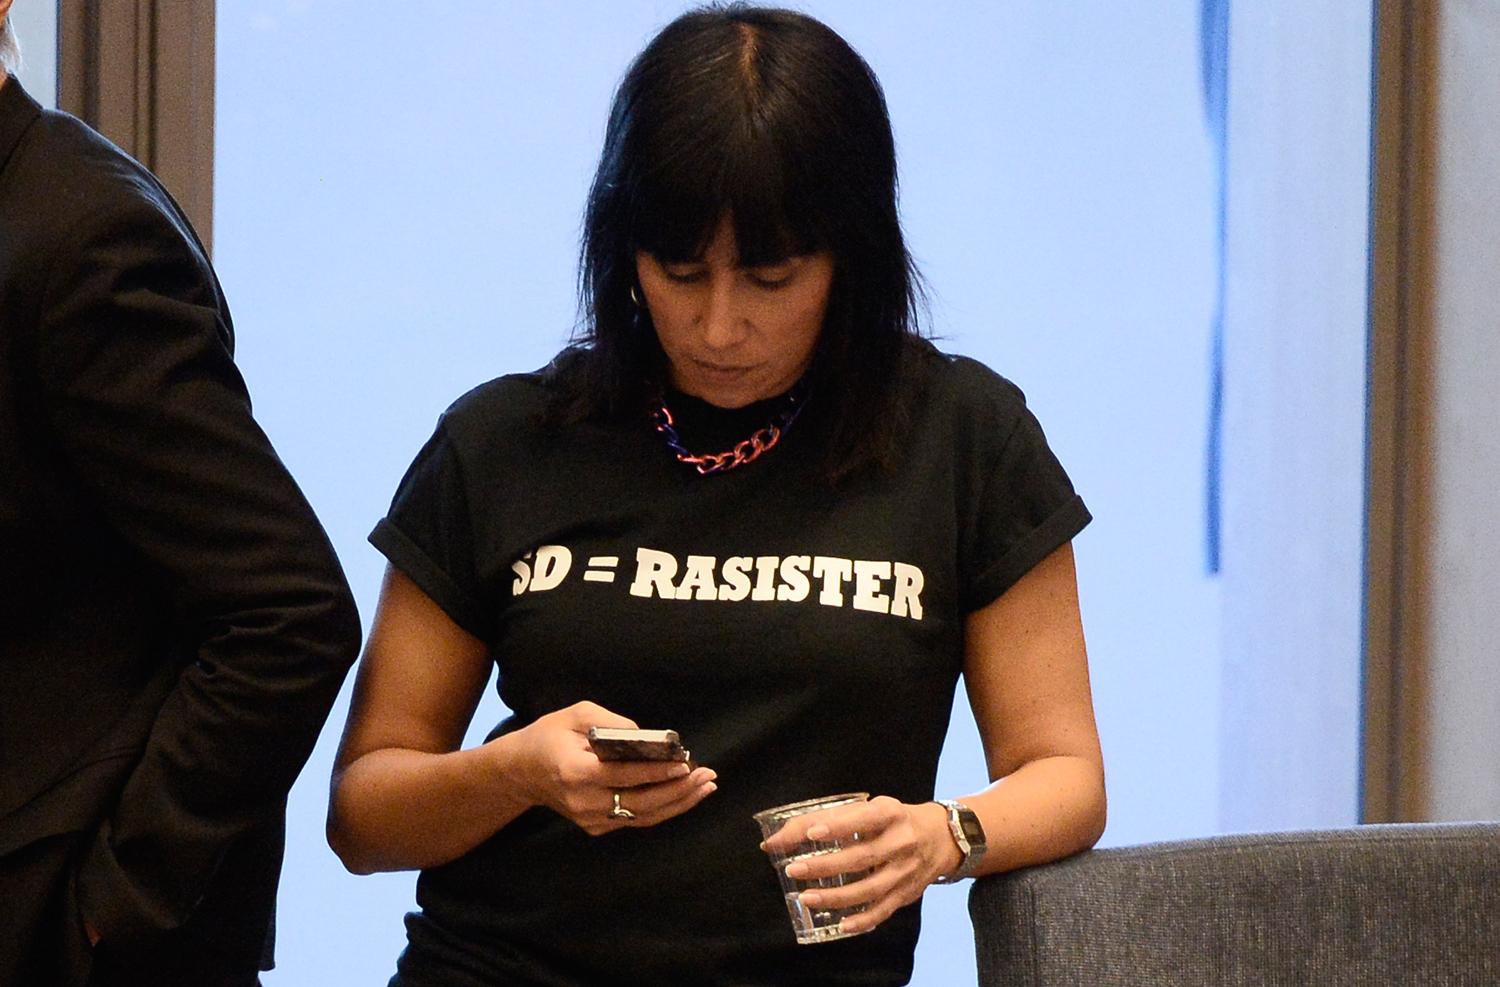 Rossana Dinamarca (v) har tidigare protesterat i kammaren mot SD, bland annat genom att bära en t-shirt med texten "SD=rasister".